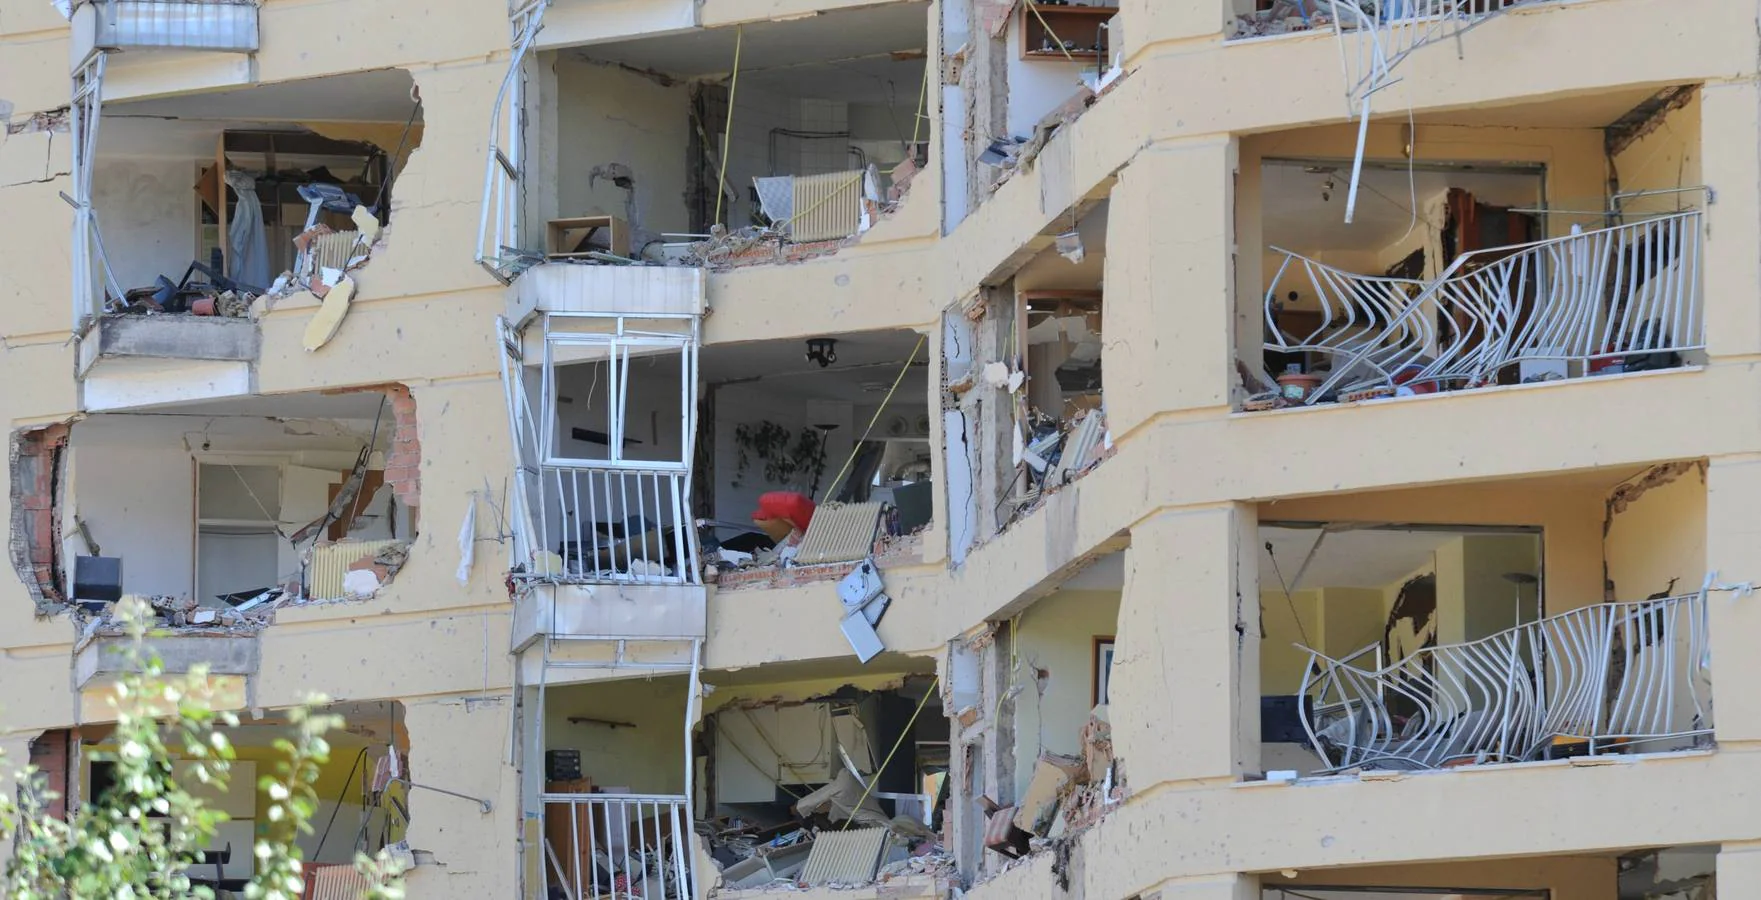 El 29 de julio de 2009, una furgoneta bomba con unos 200 kilos de explosivos colocada por la banda terrorista ETA en las traseras de la casa-cuartel de la Guardia Civil, explotó a las cuatro de la madrugada, provocando heridas, la mayoría leves a 60 personas y cuantiosos daños materiales